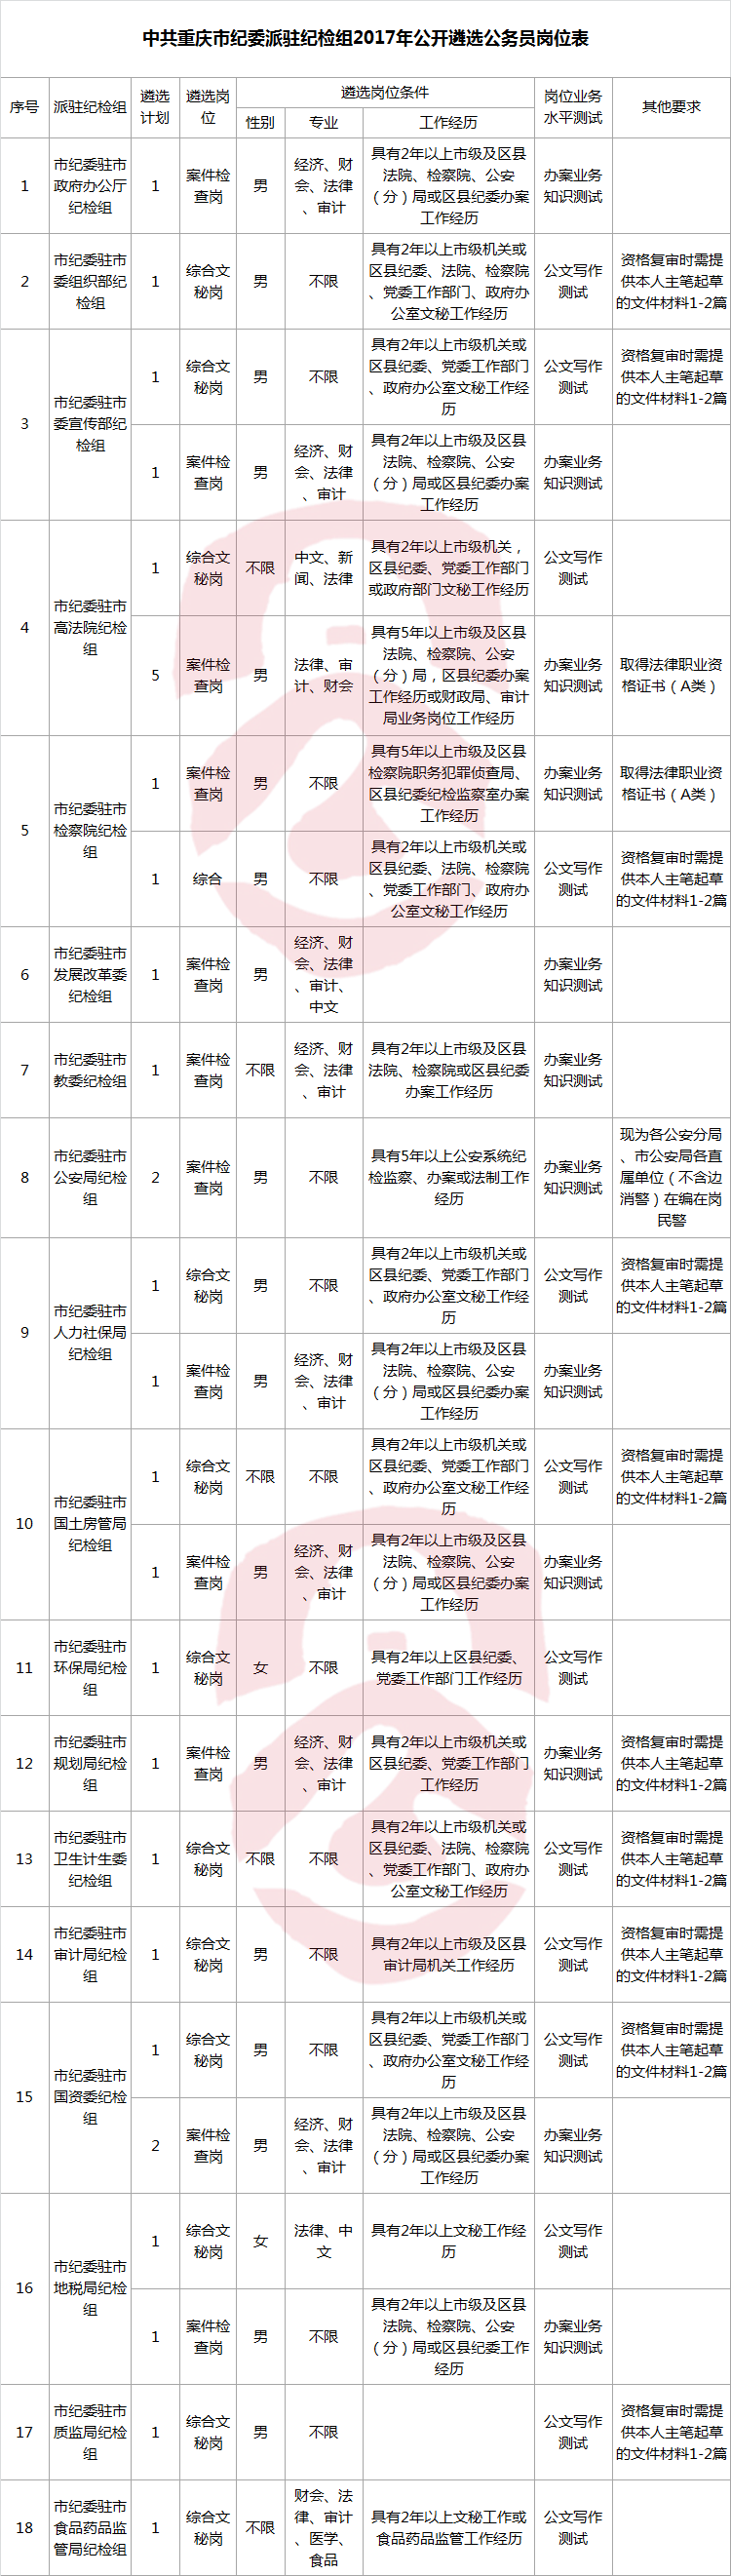 重庆市纪委派驻纪检组2017年公开遴选公务员岗位表.png